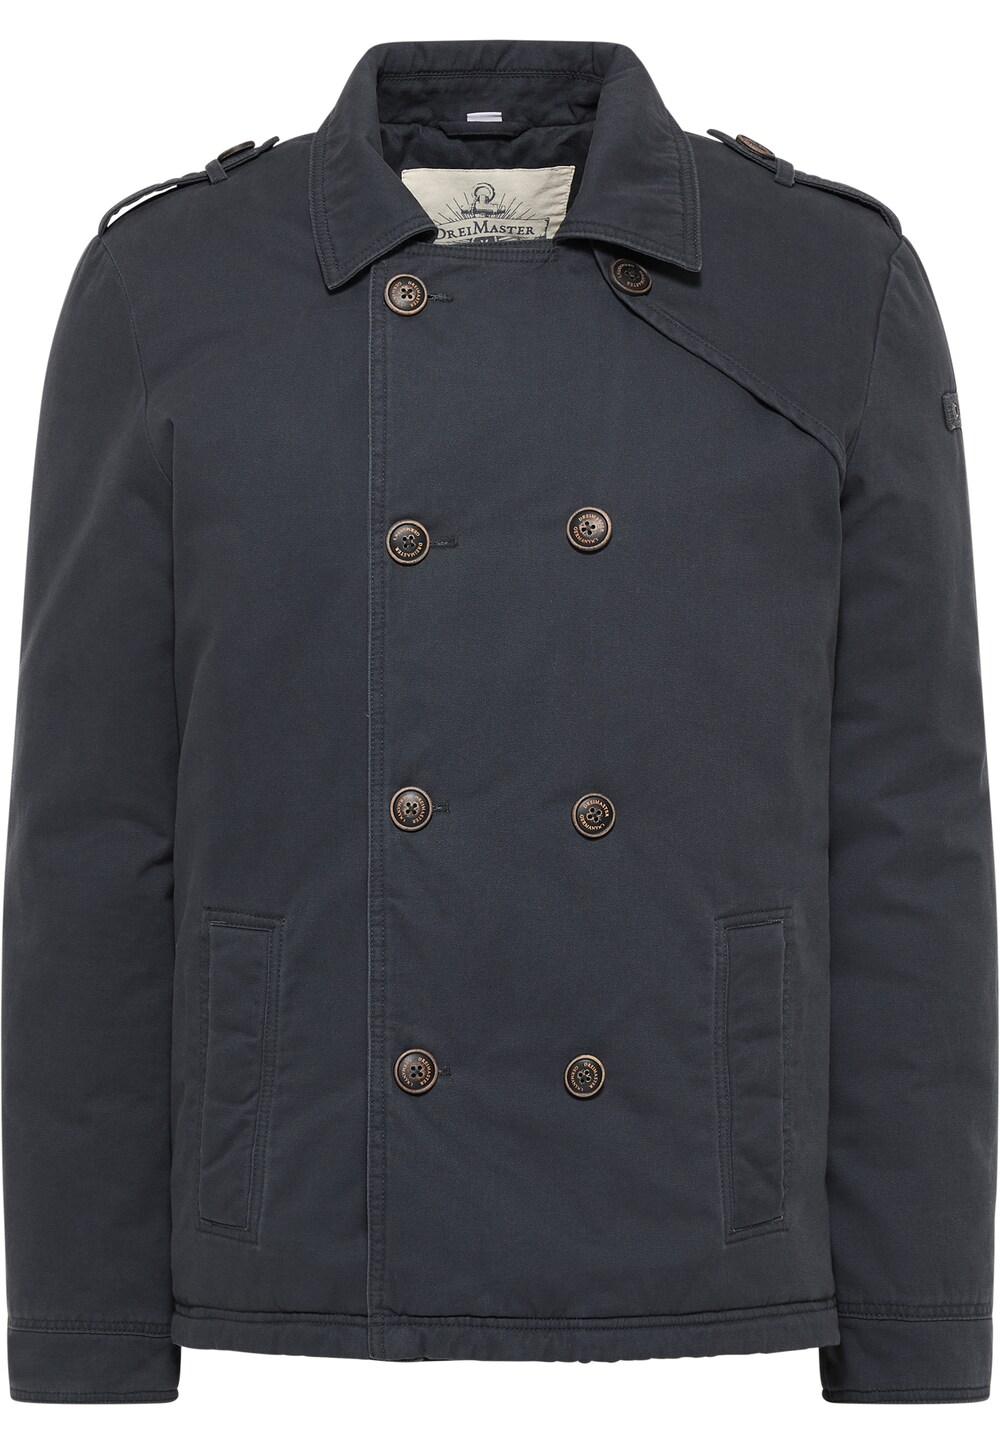 Межсезонная куртка DreiMaster Vintage, ночной синий межсезонное пальто dreimaster klassik ночной синий